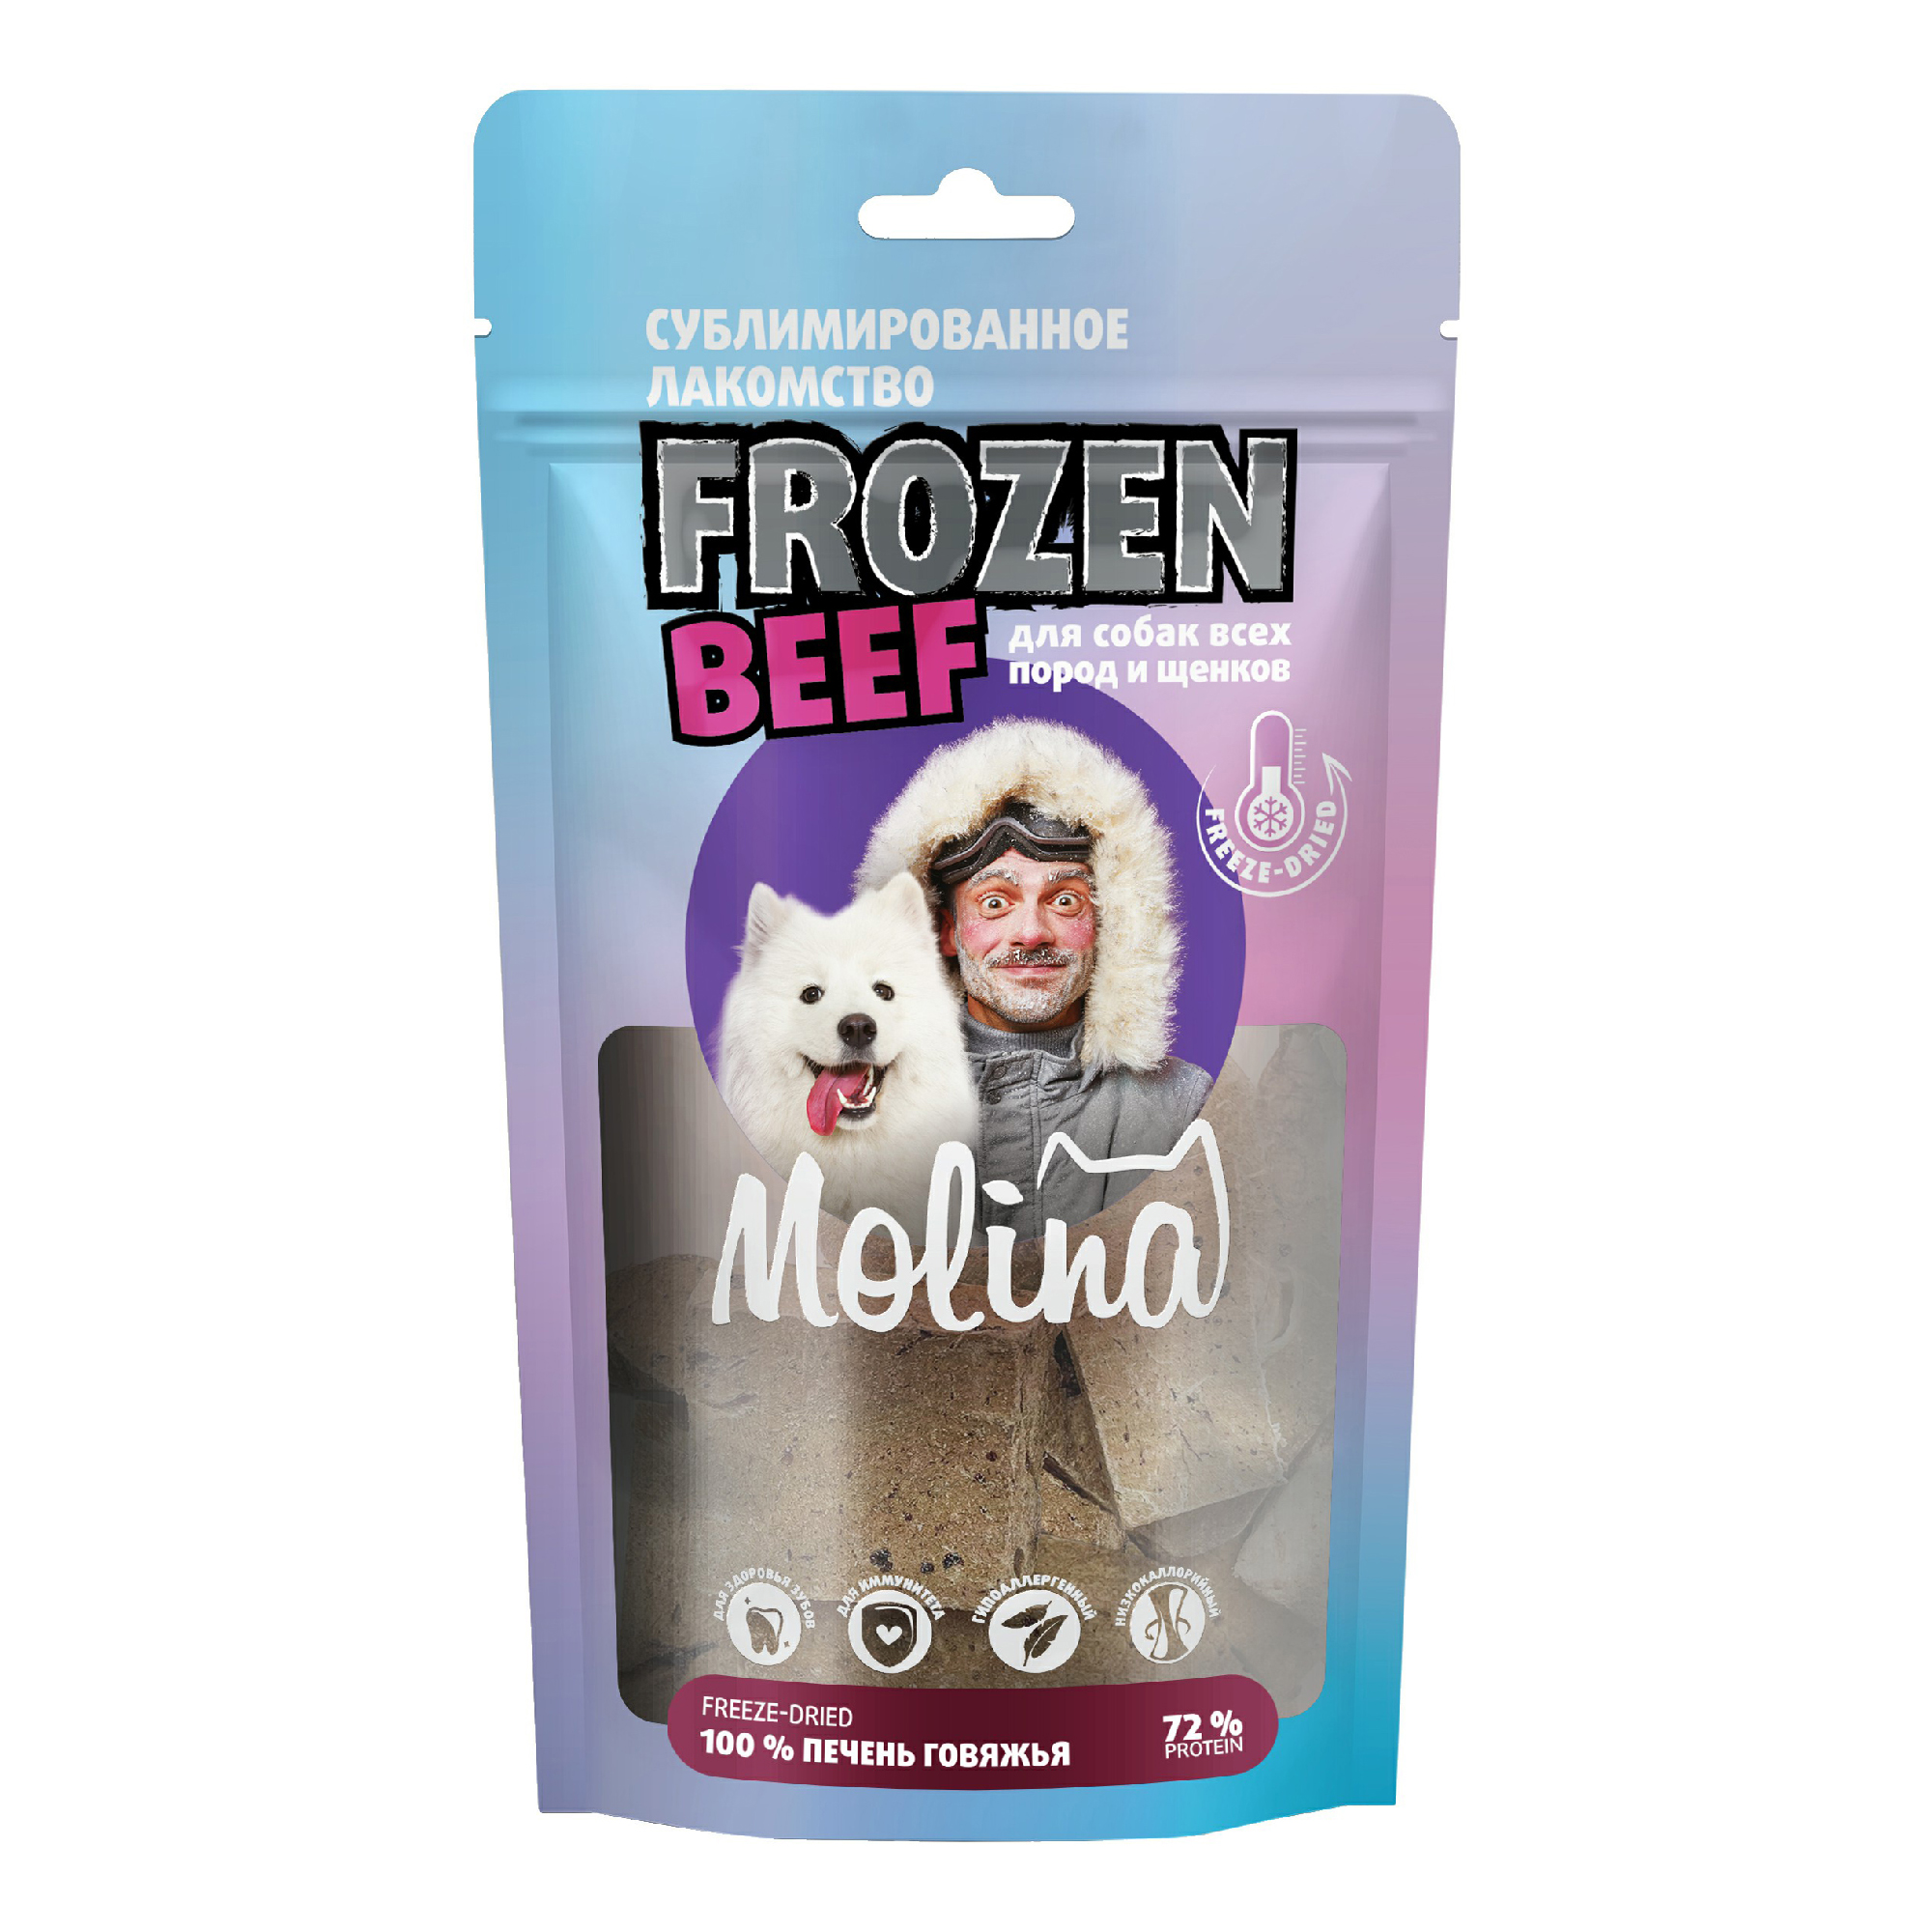 фото Лакомства для собак molina frozen beef с говяжьей печенью, 55 г